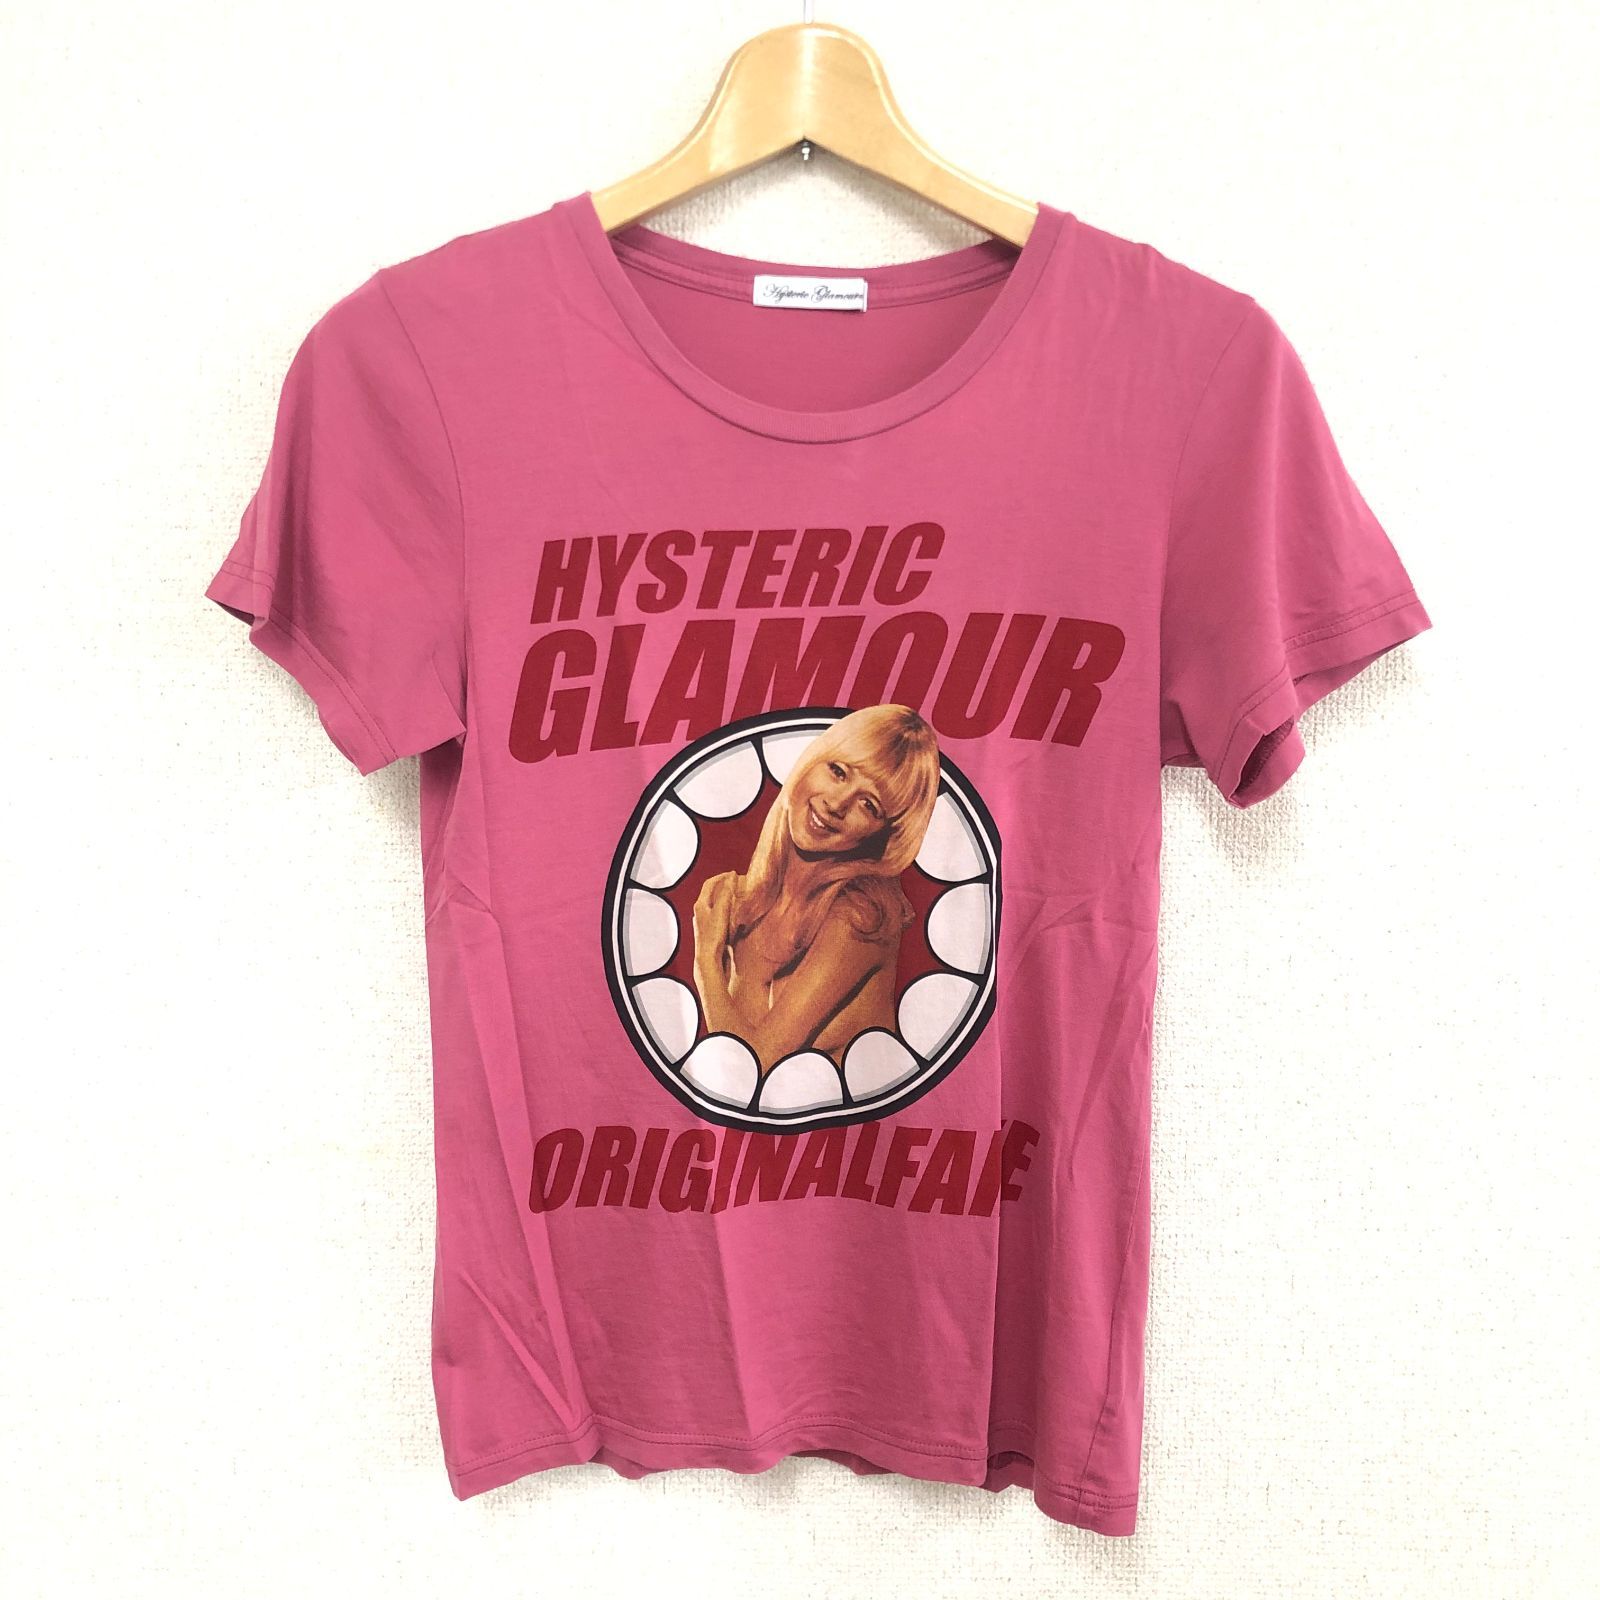 Hysteric Glamour Tシャツ ピンク Free レディース ORIGINALFAKE